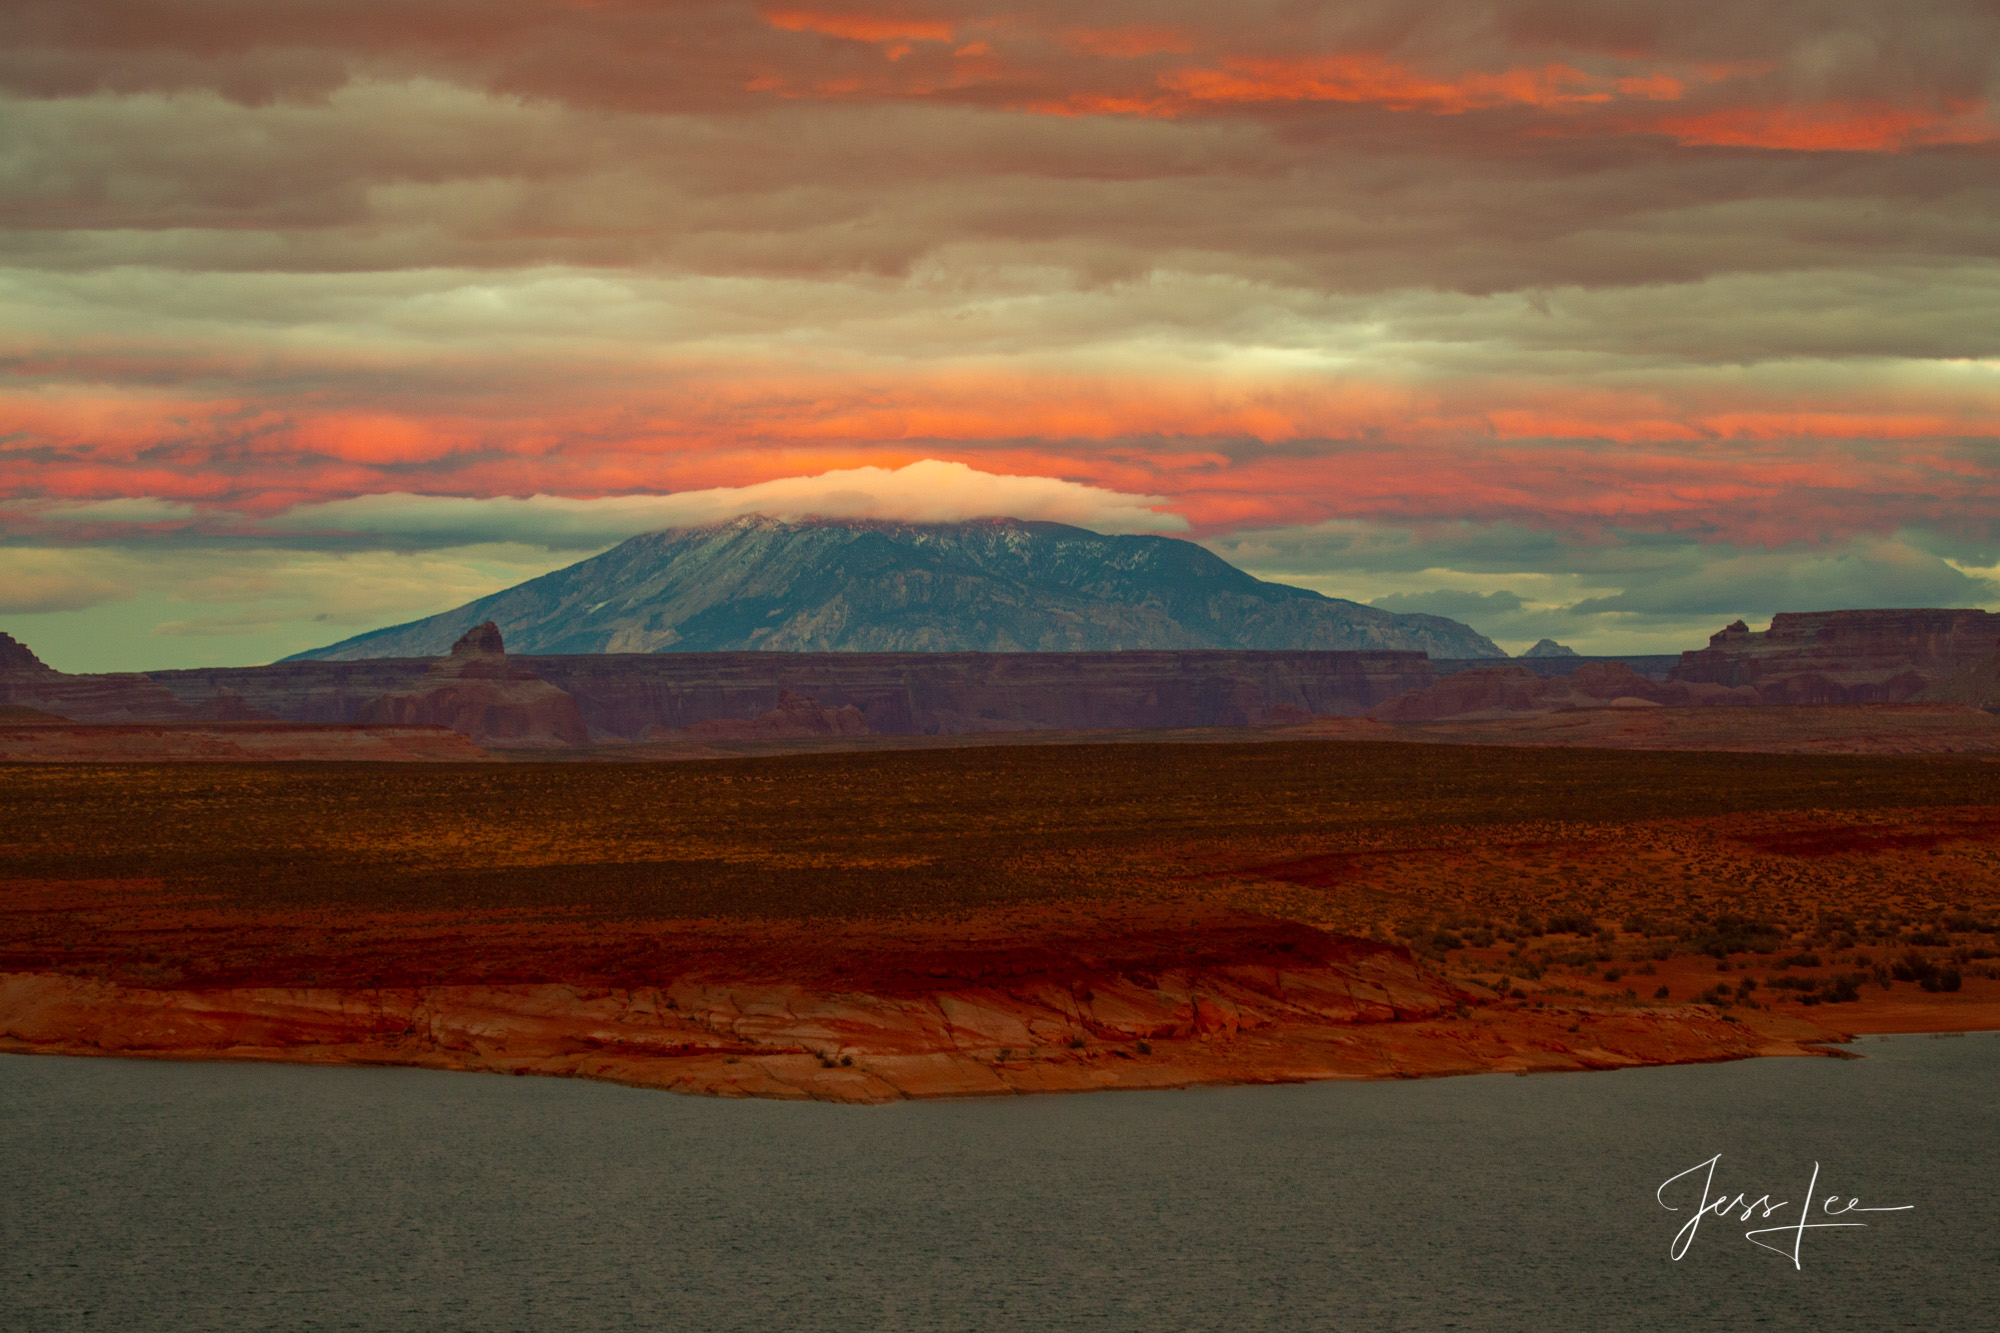 Sunset on the Navajo desert in Arizona. 